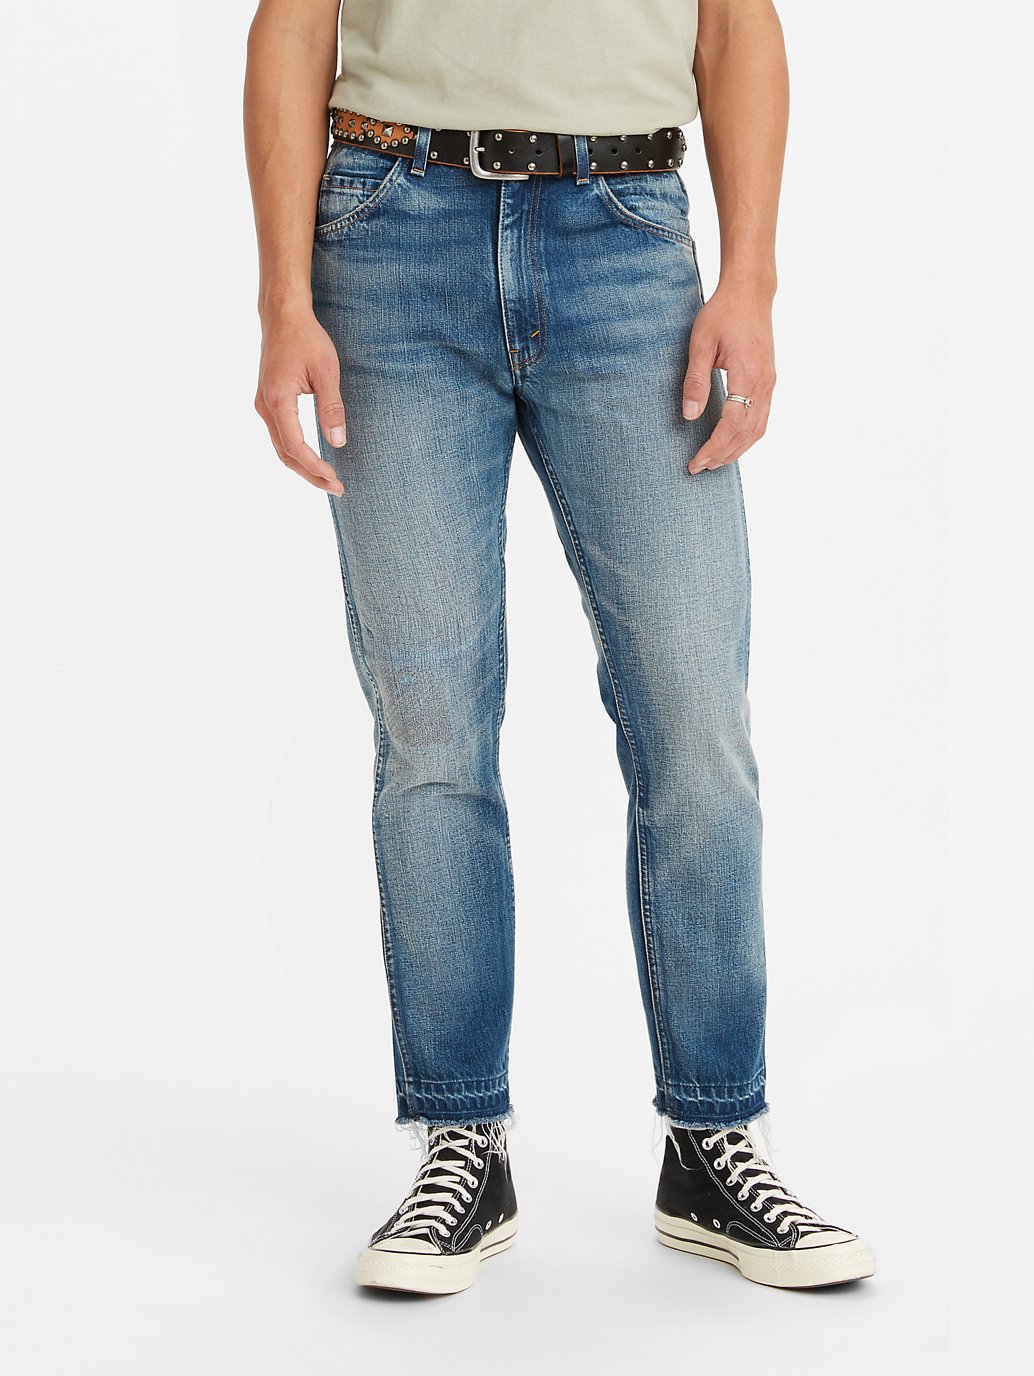 Buy Levi's® Vintage Clothing 1965 Men's 606 Super Slim Jeans | Levi's®  Official Online Store MY